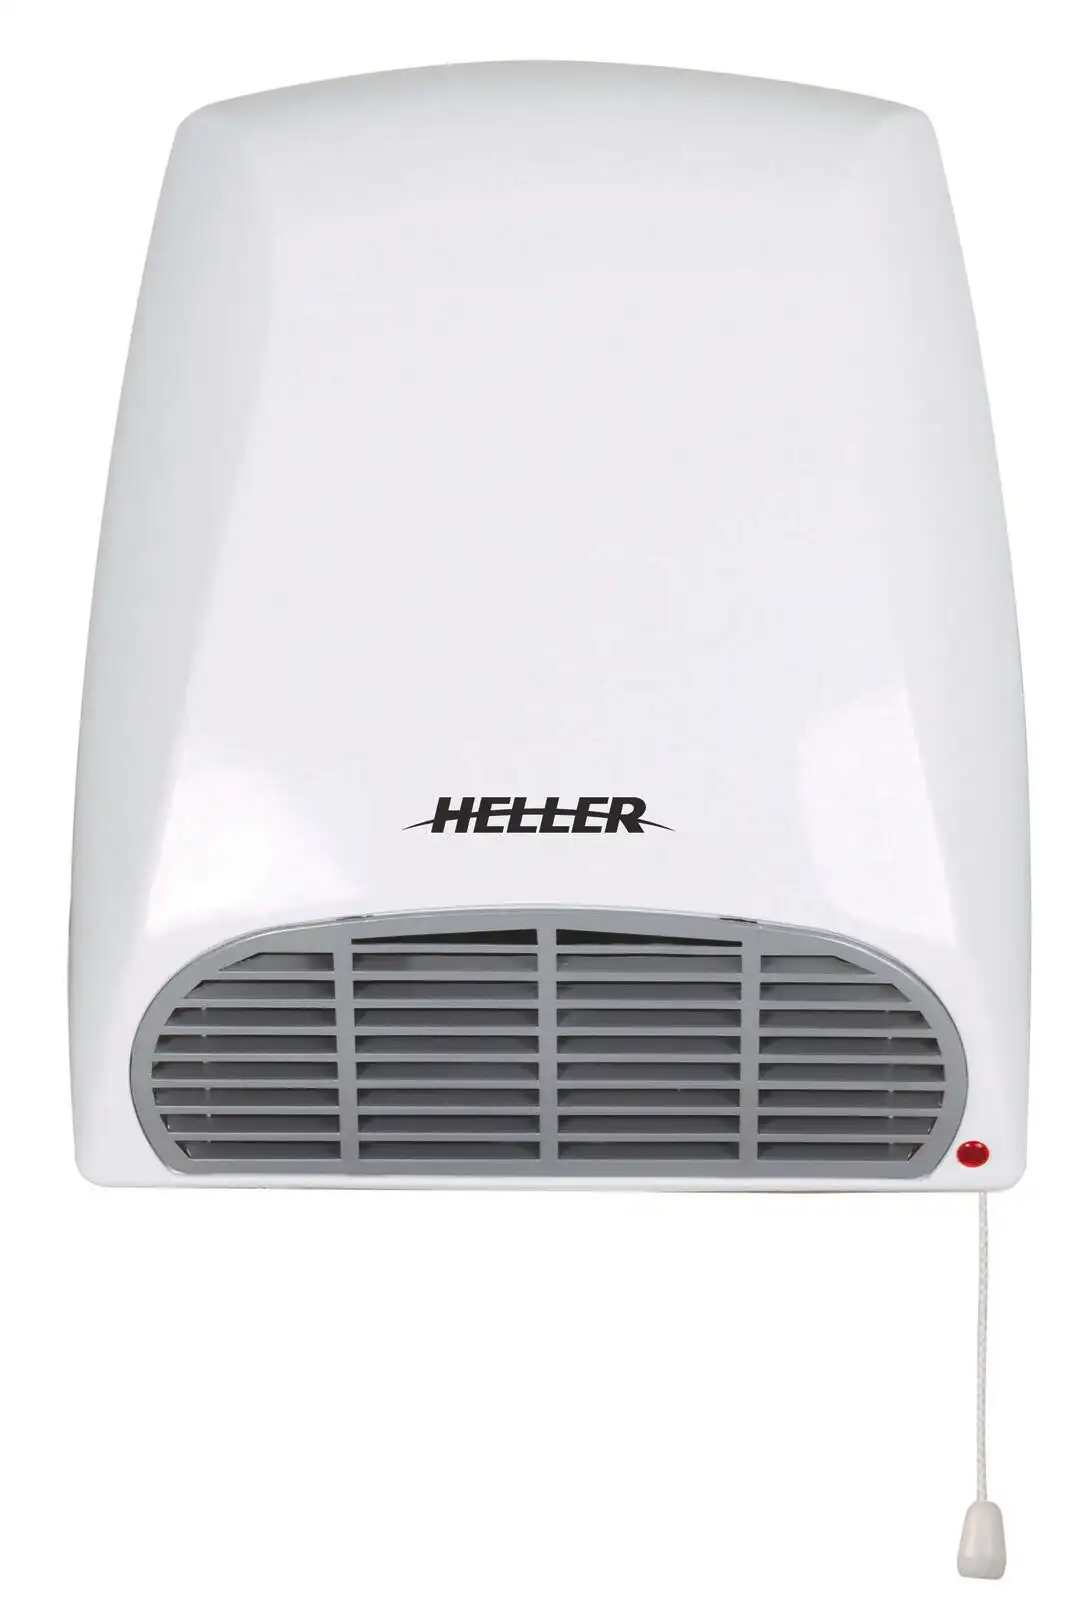 Heller 2000W wall mounted Bathroom Fan Heater - HBH2000